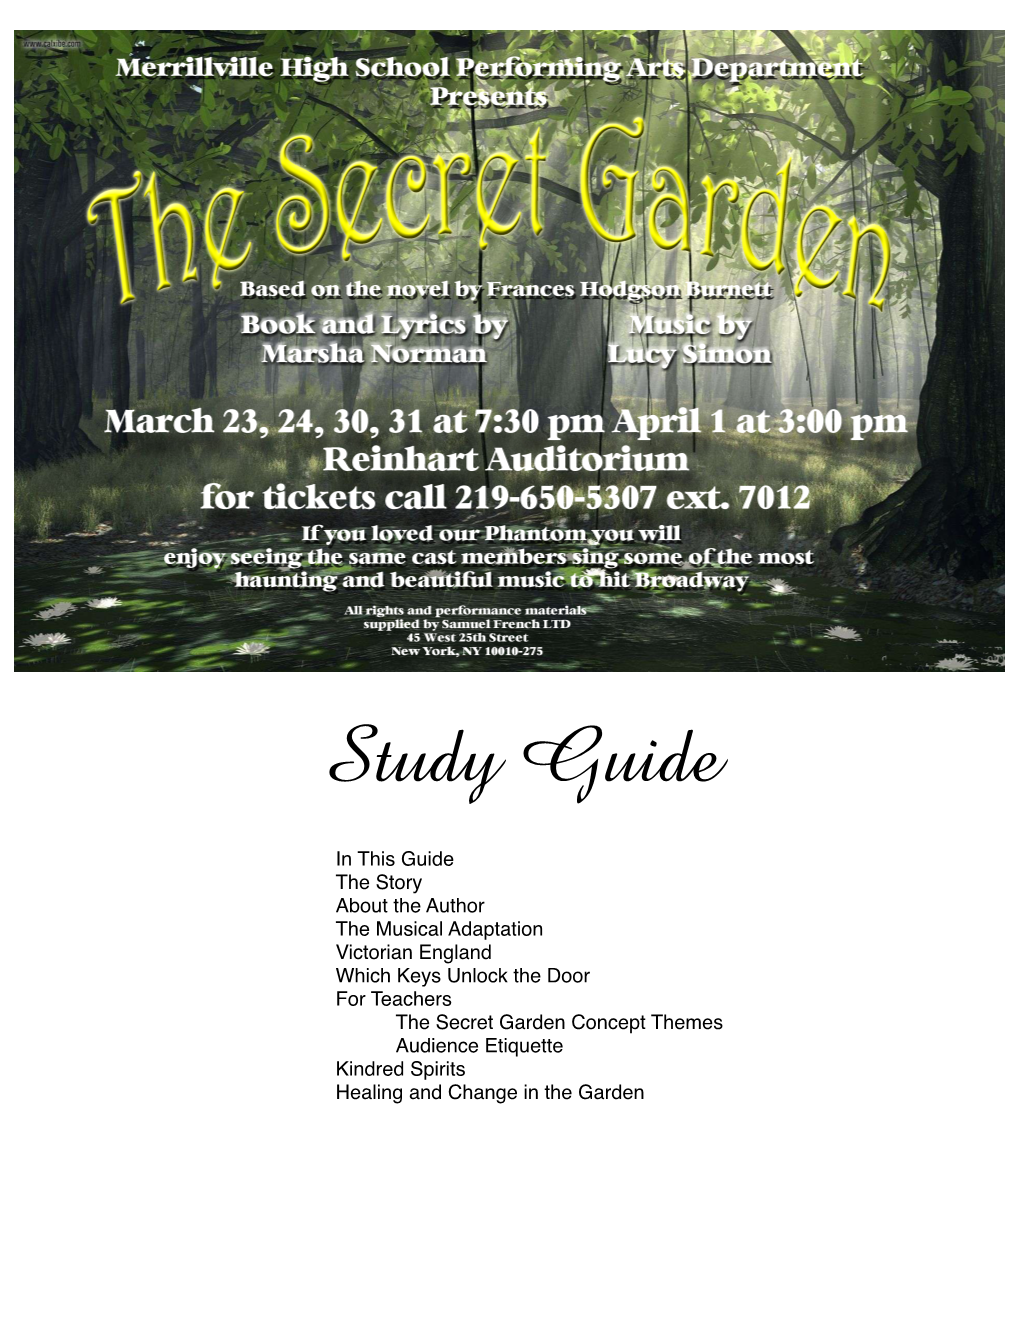 The Secret Garden Study Guide V1.1